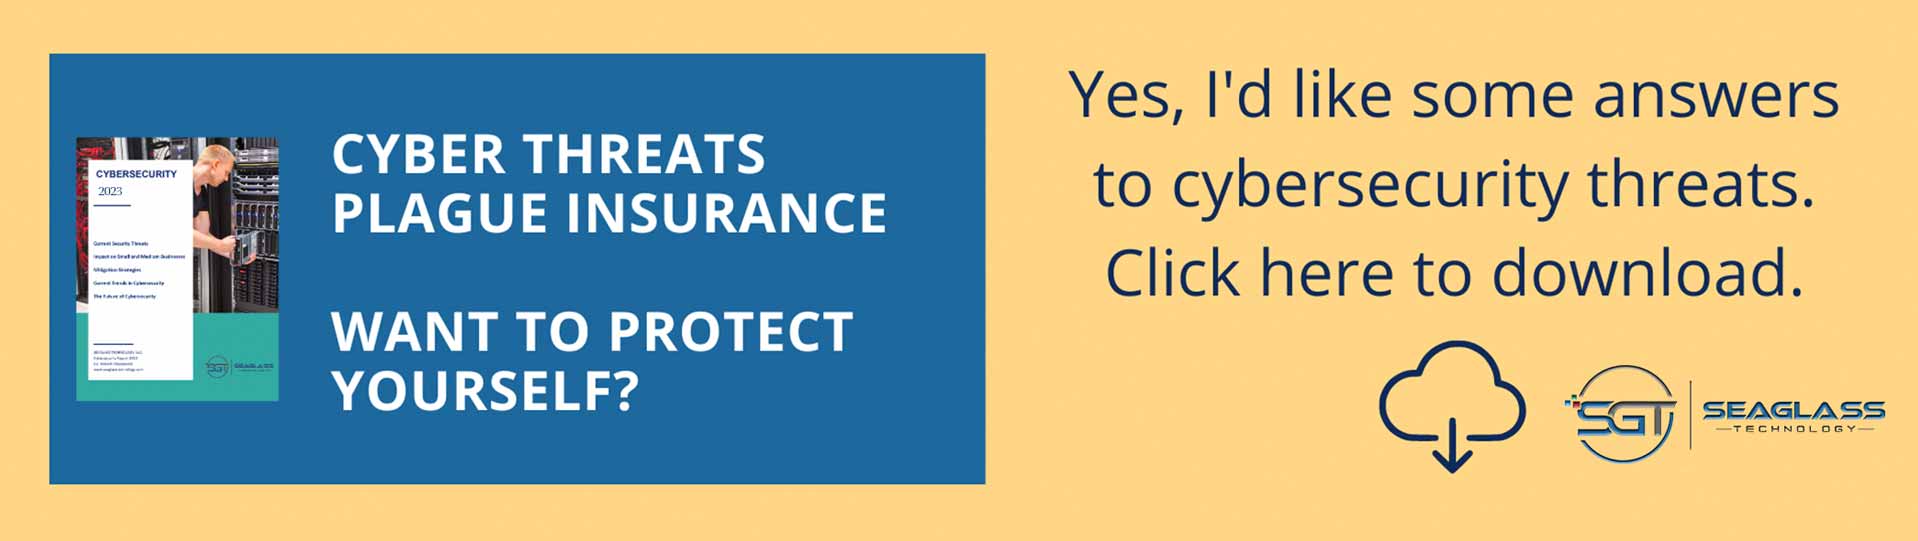 cyber threats plague insurance